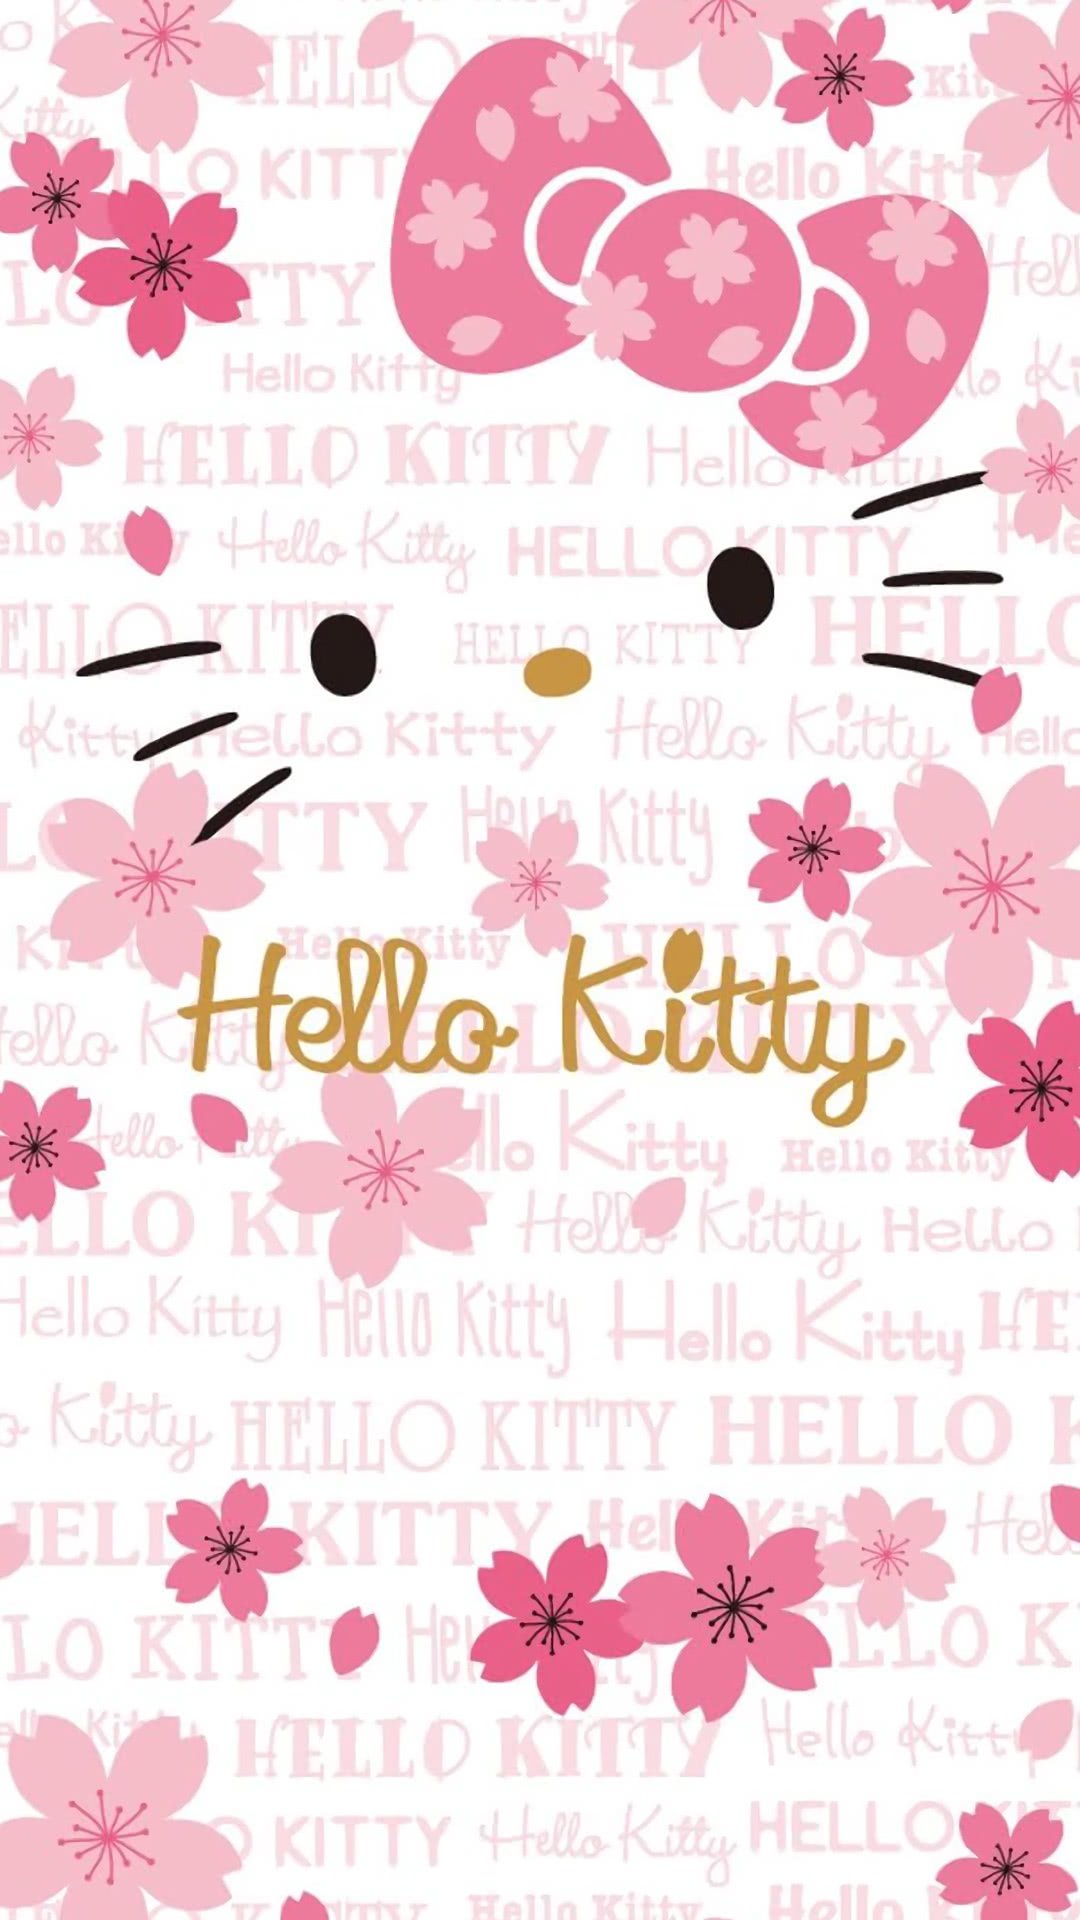 Hello kitty iphone wallpaper, Kitty wallpaper, Hello kitty aesthetic